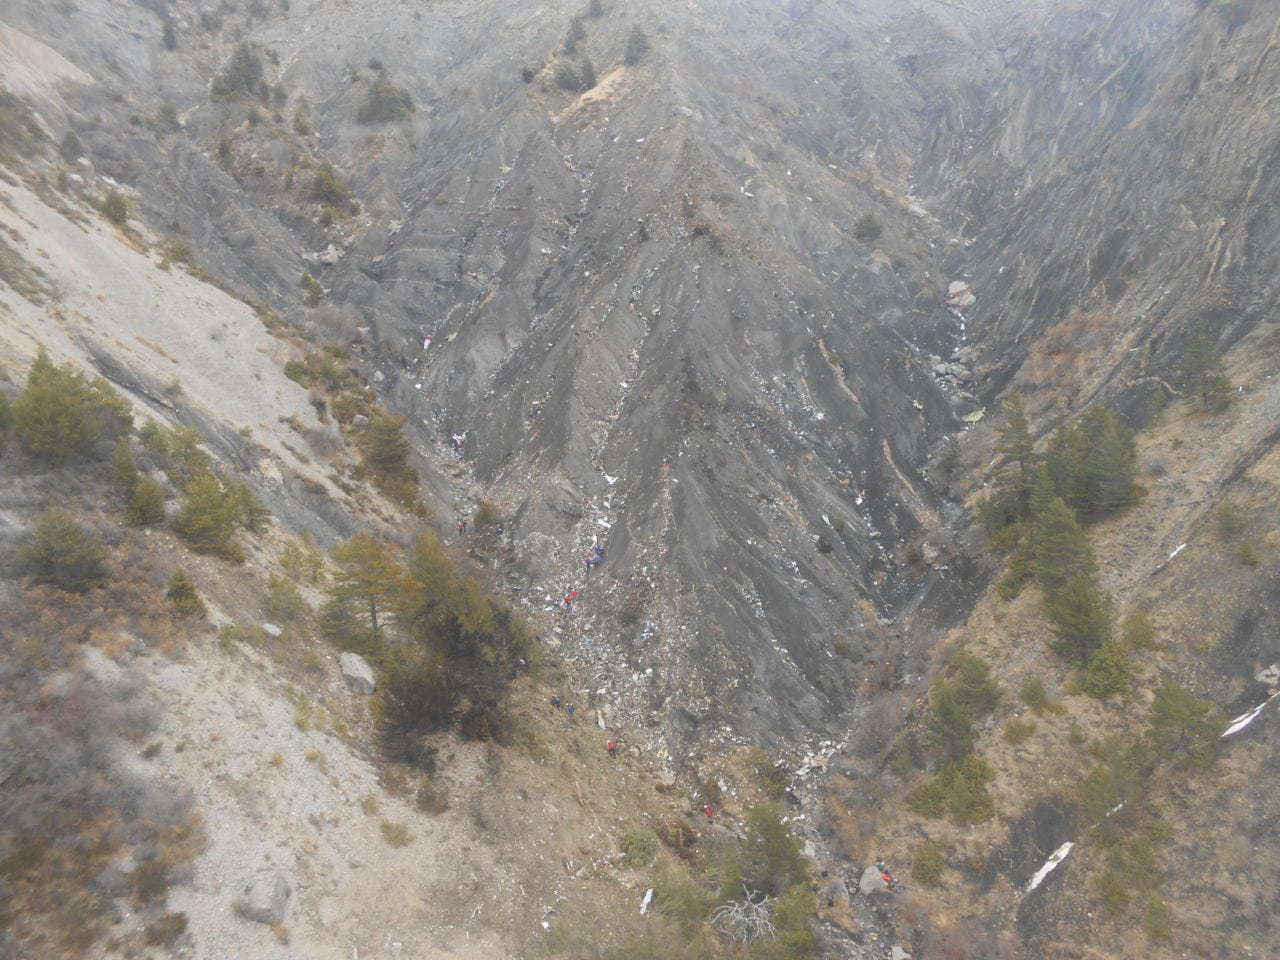 The crash site of Germanwings flight 9525